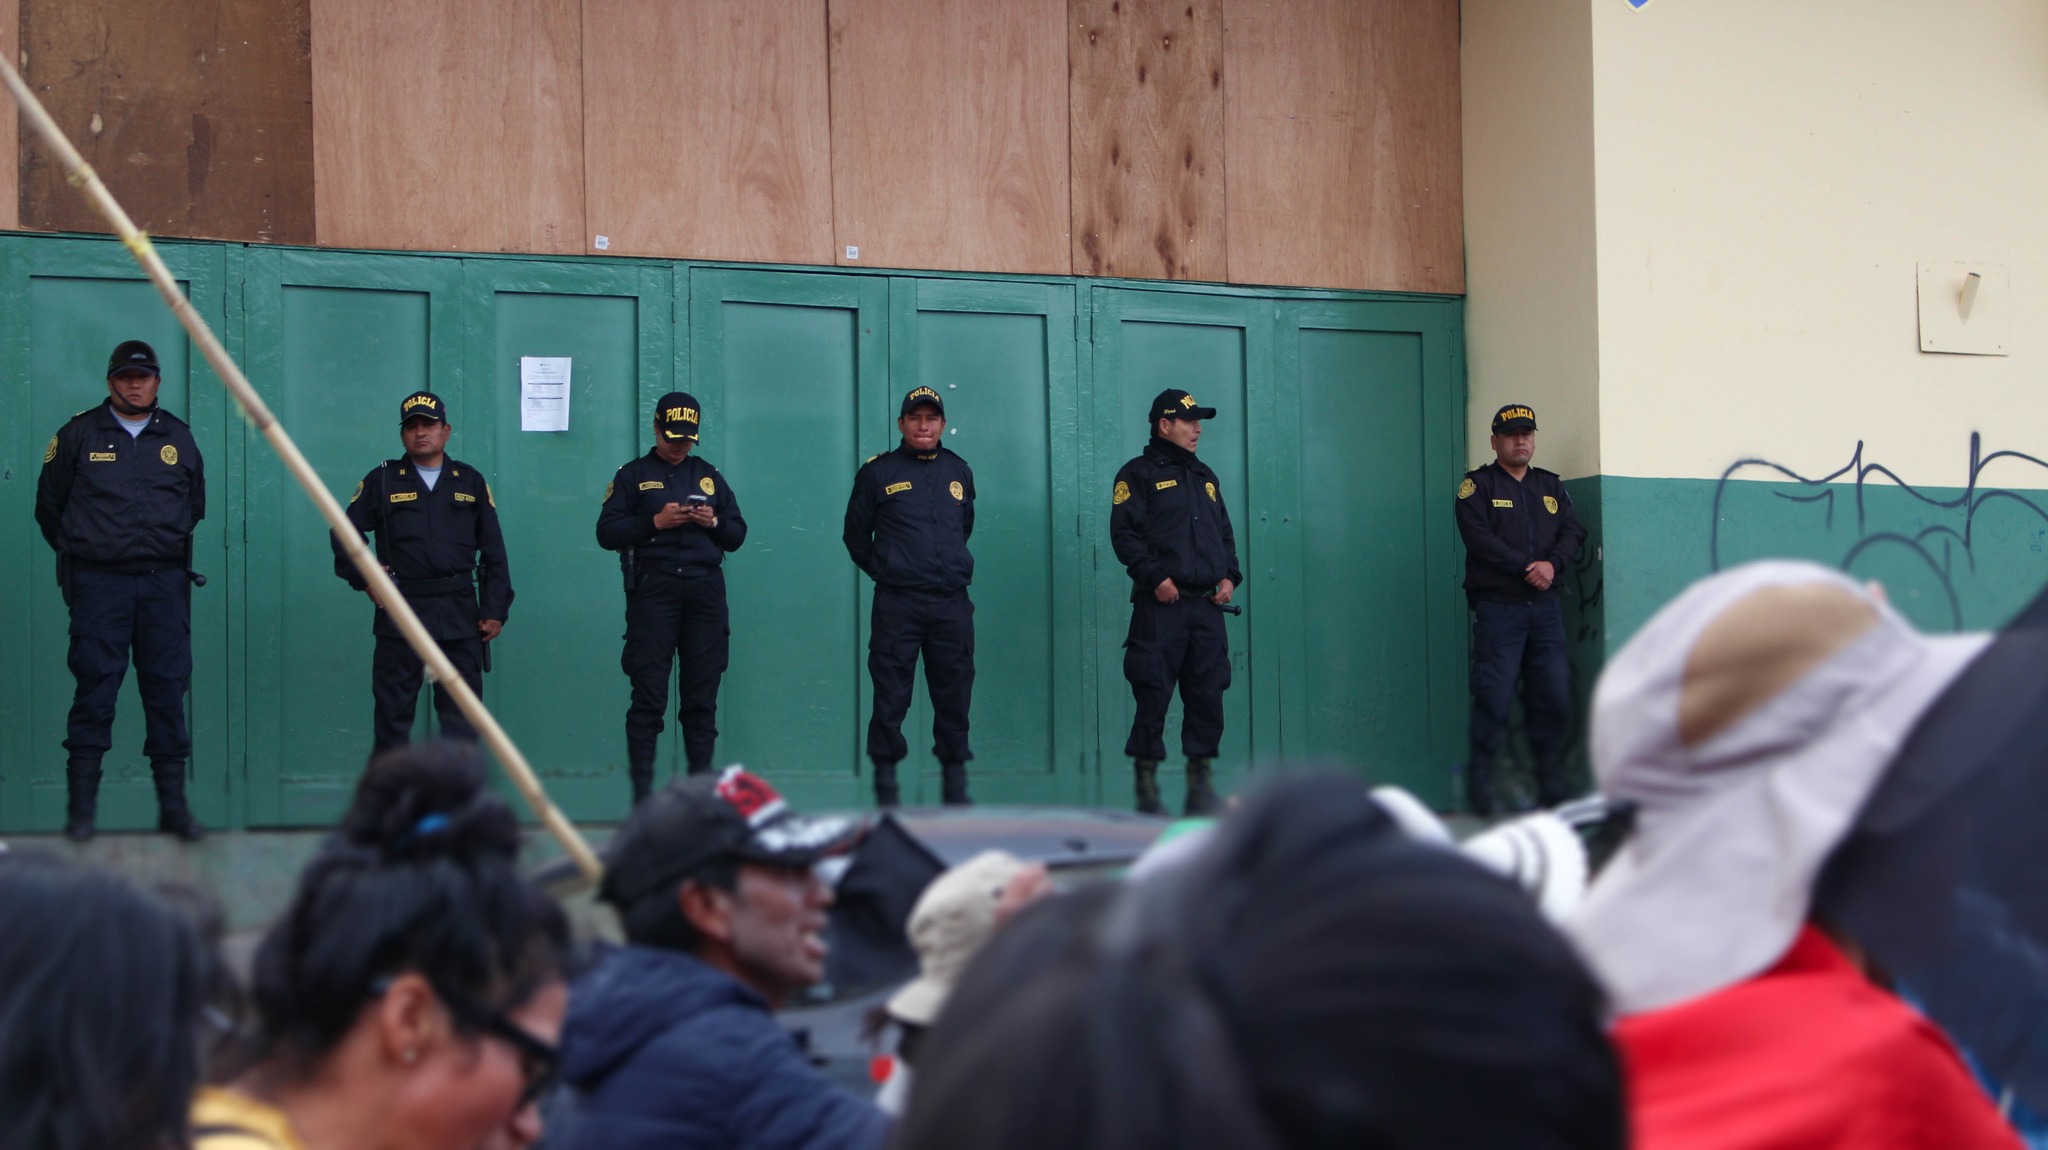  Medios y organizaciones denuncian el envío de uniformados a Puno, Perú